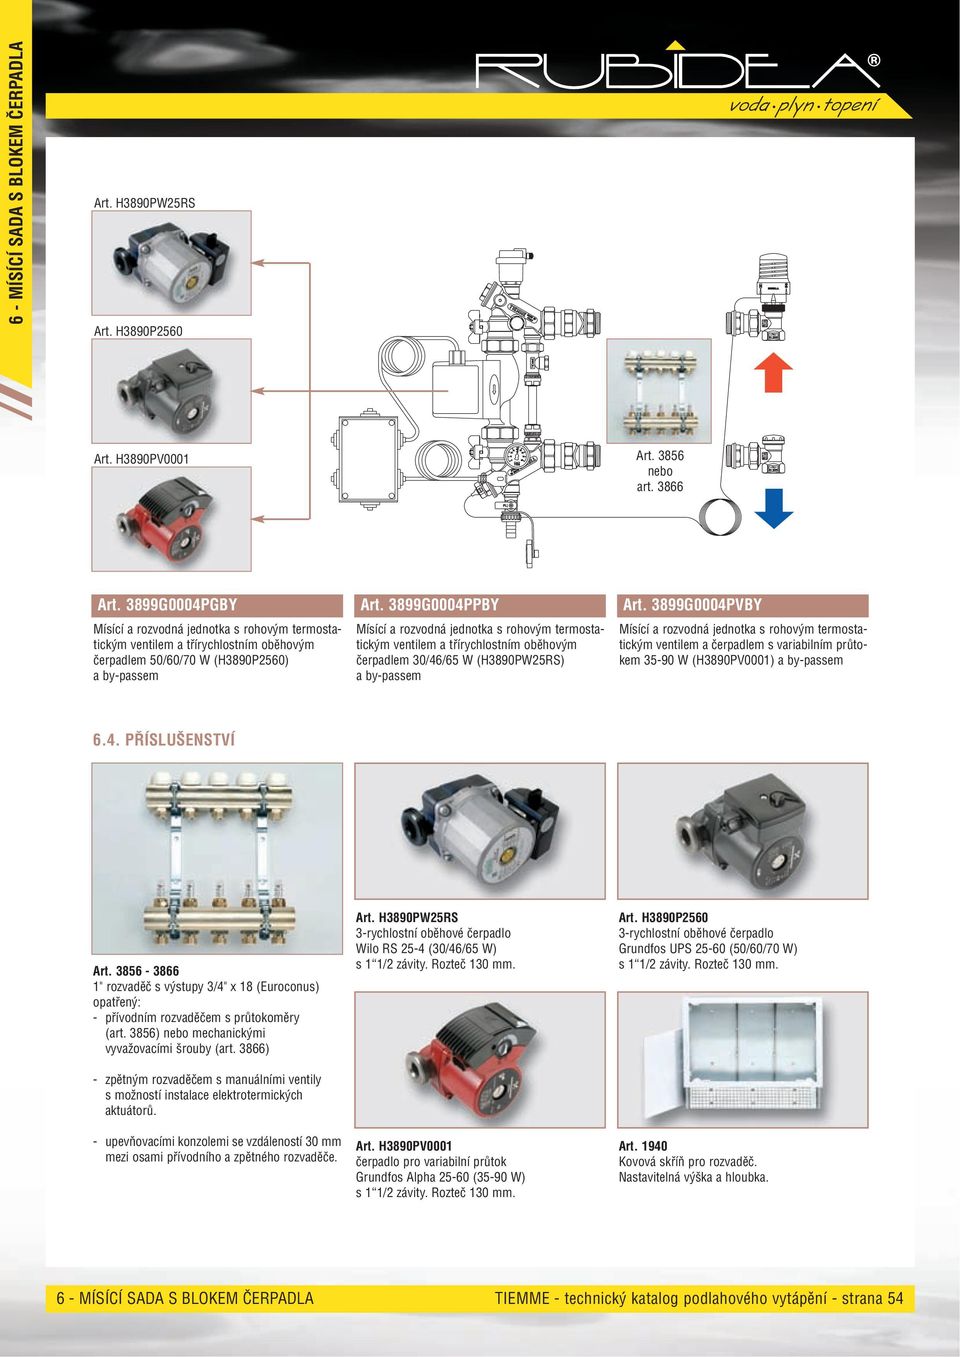 ) mechanickými vyvažovacími šrouby (art. ) - zpětným rozvaděčem s manuálními ventily s možností instalace elektrotermických aktuátorů.